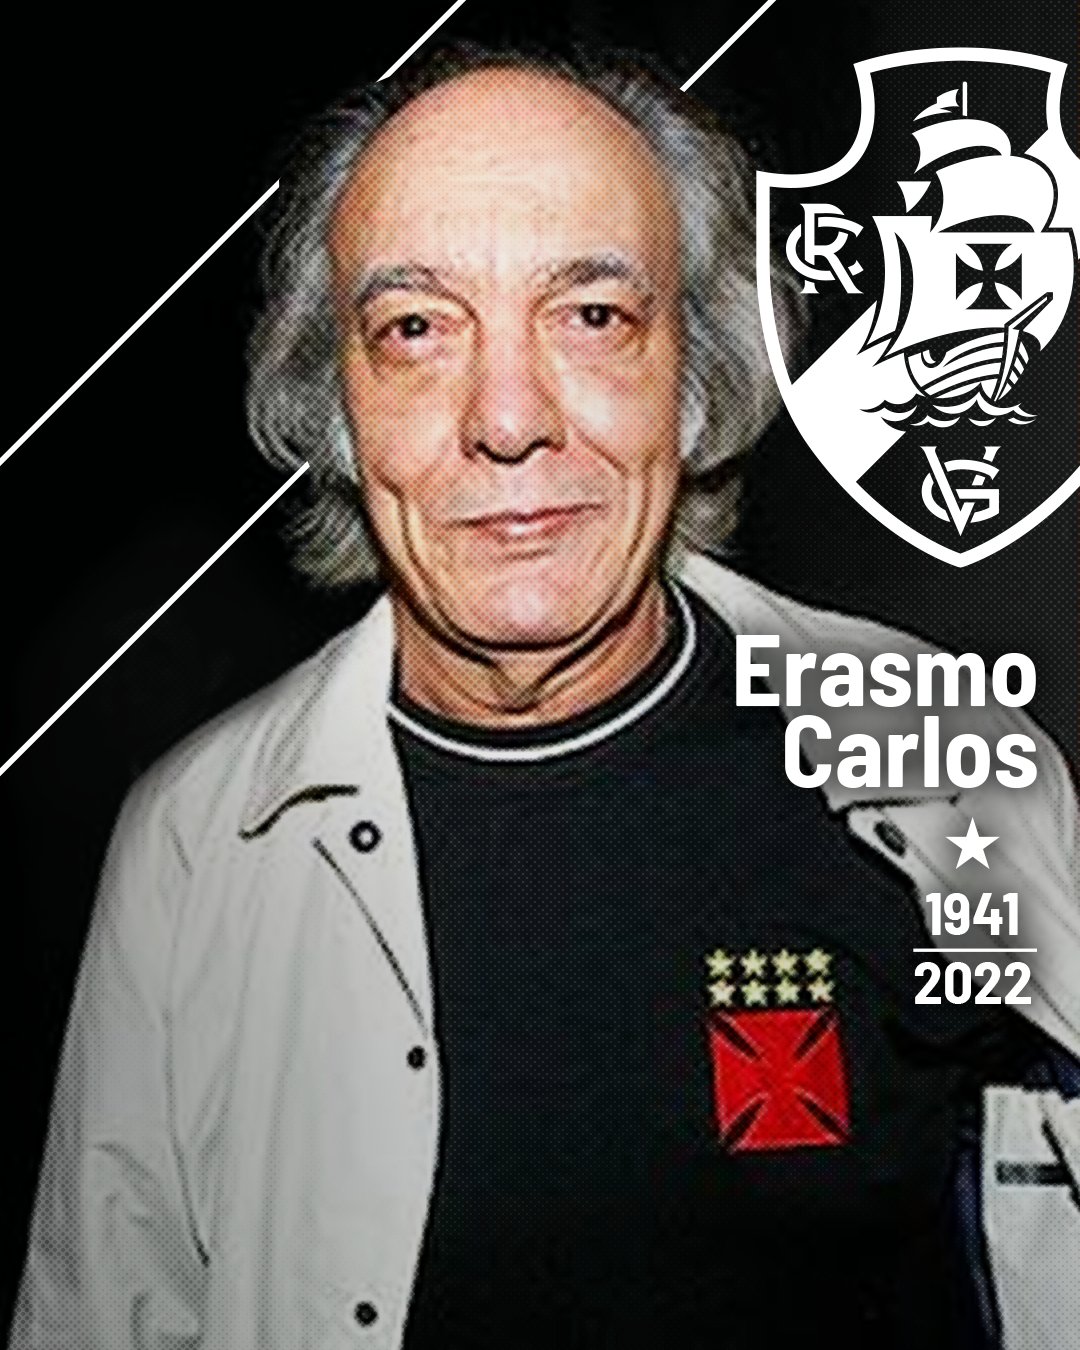 VASCO ERASMO CARLOS